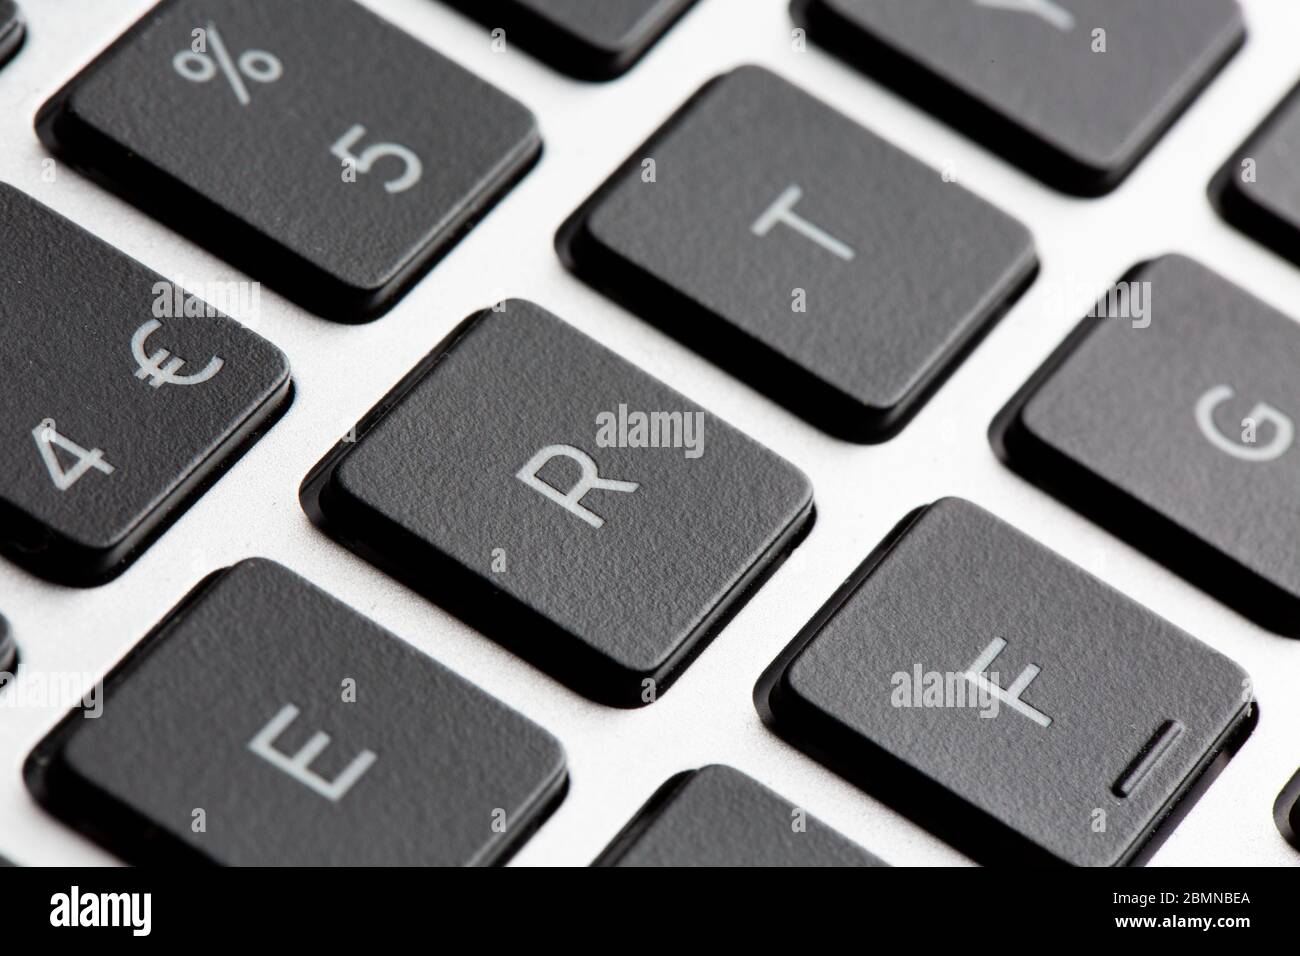 Gros plan sur les touches du clavier de l'ordinateur avec effet bokeh  faible profondeur de champ Photo Stock - Alamy